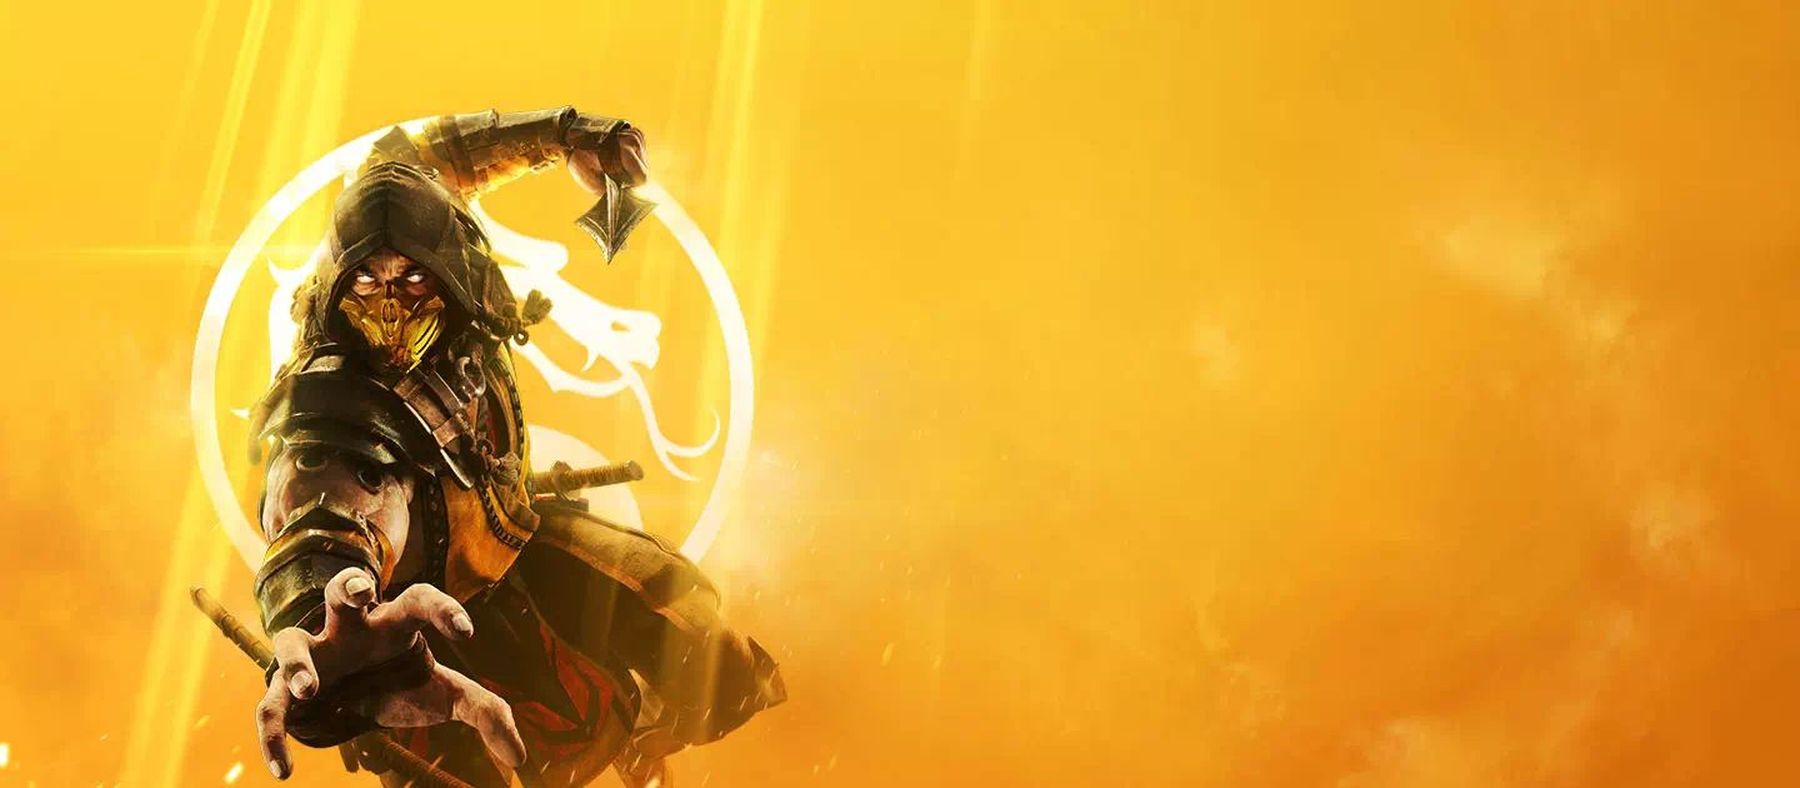 VIDEO: Mortal Kombat opet preskače granicu brutalnog (ne)ukusa i trči prema horizontu